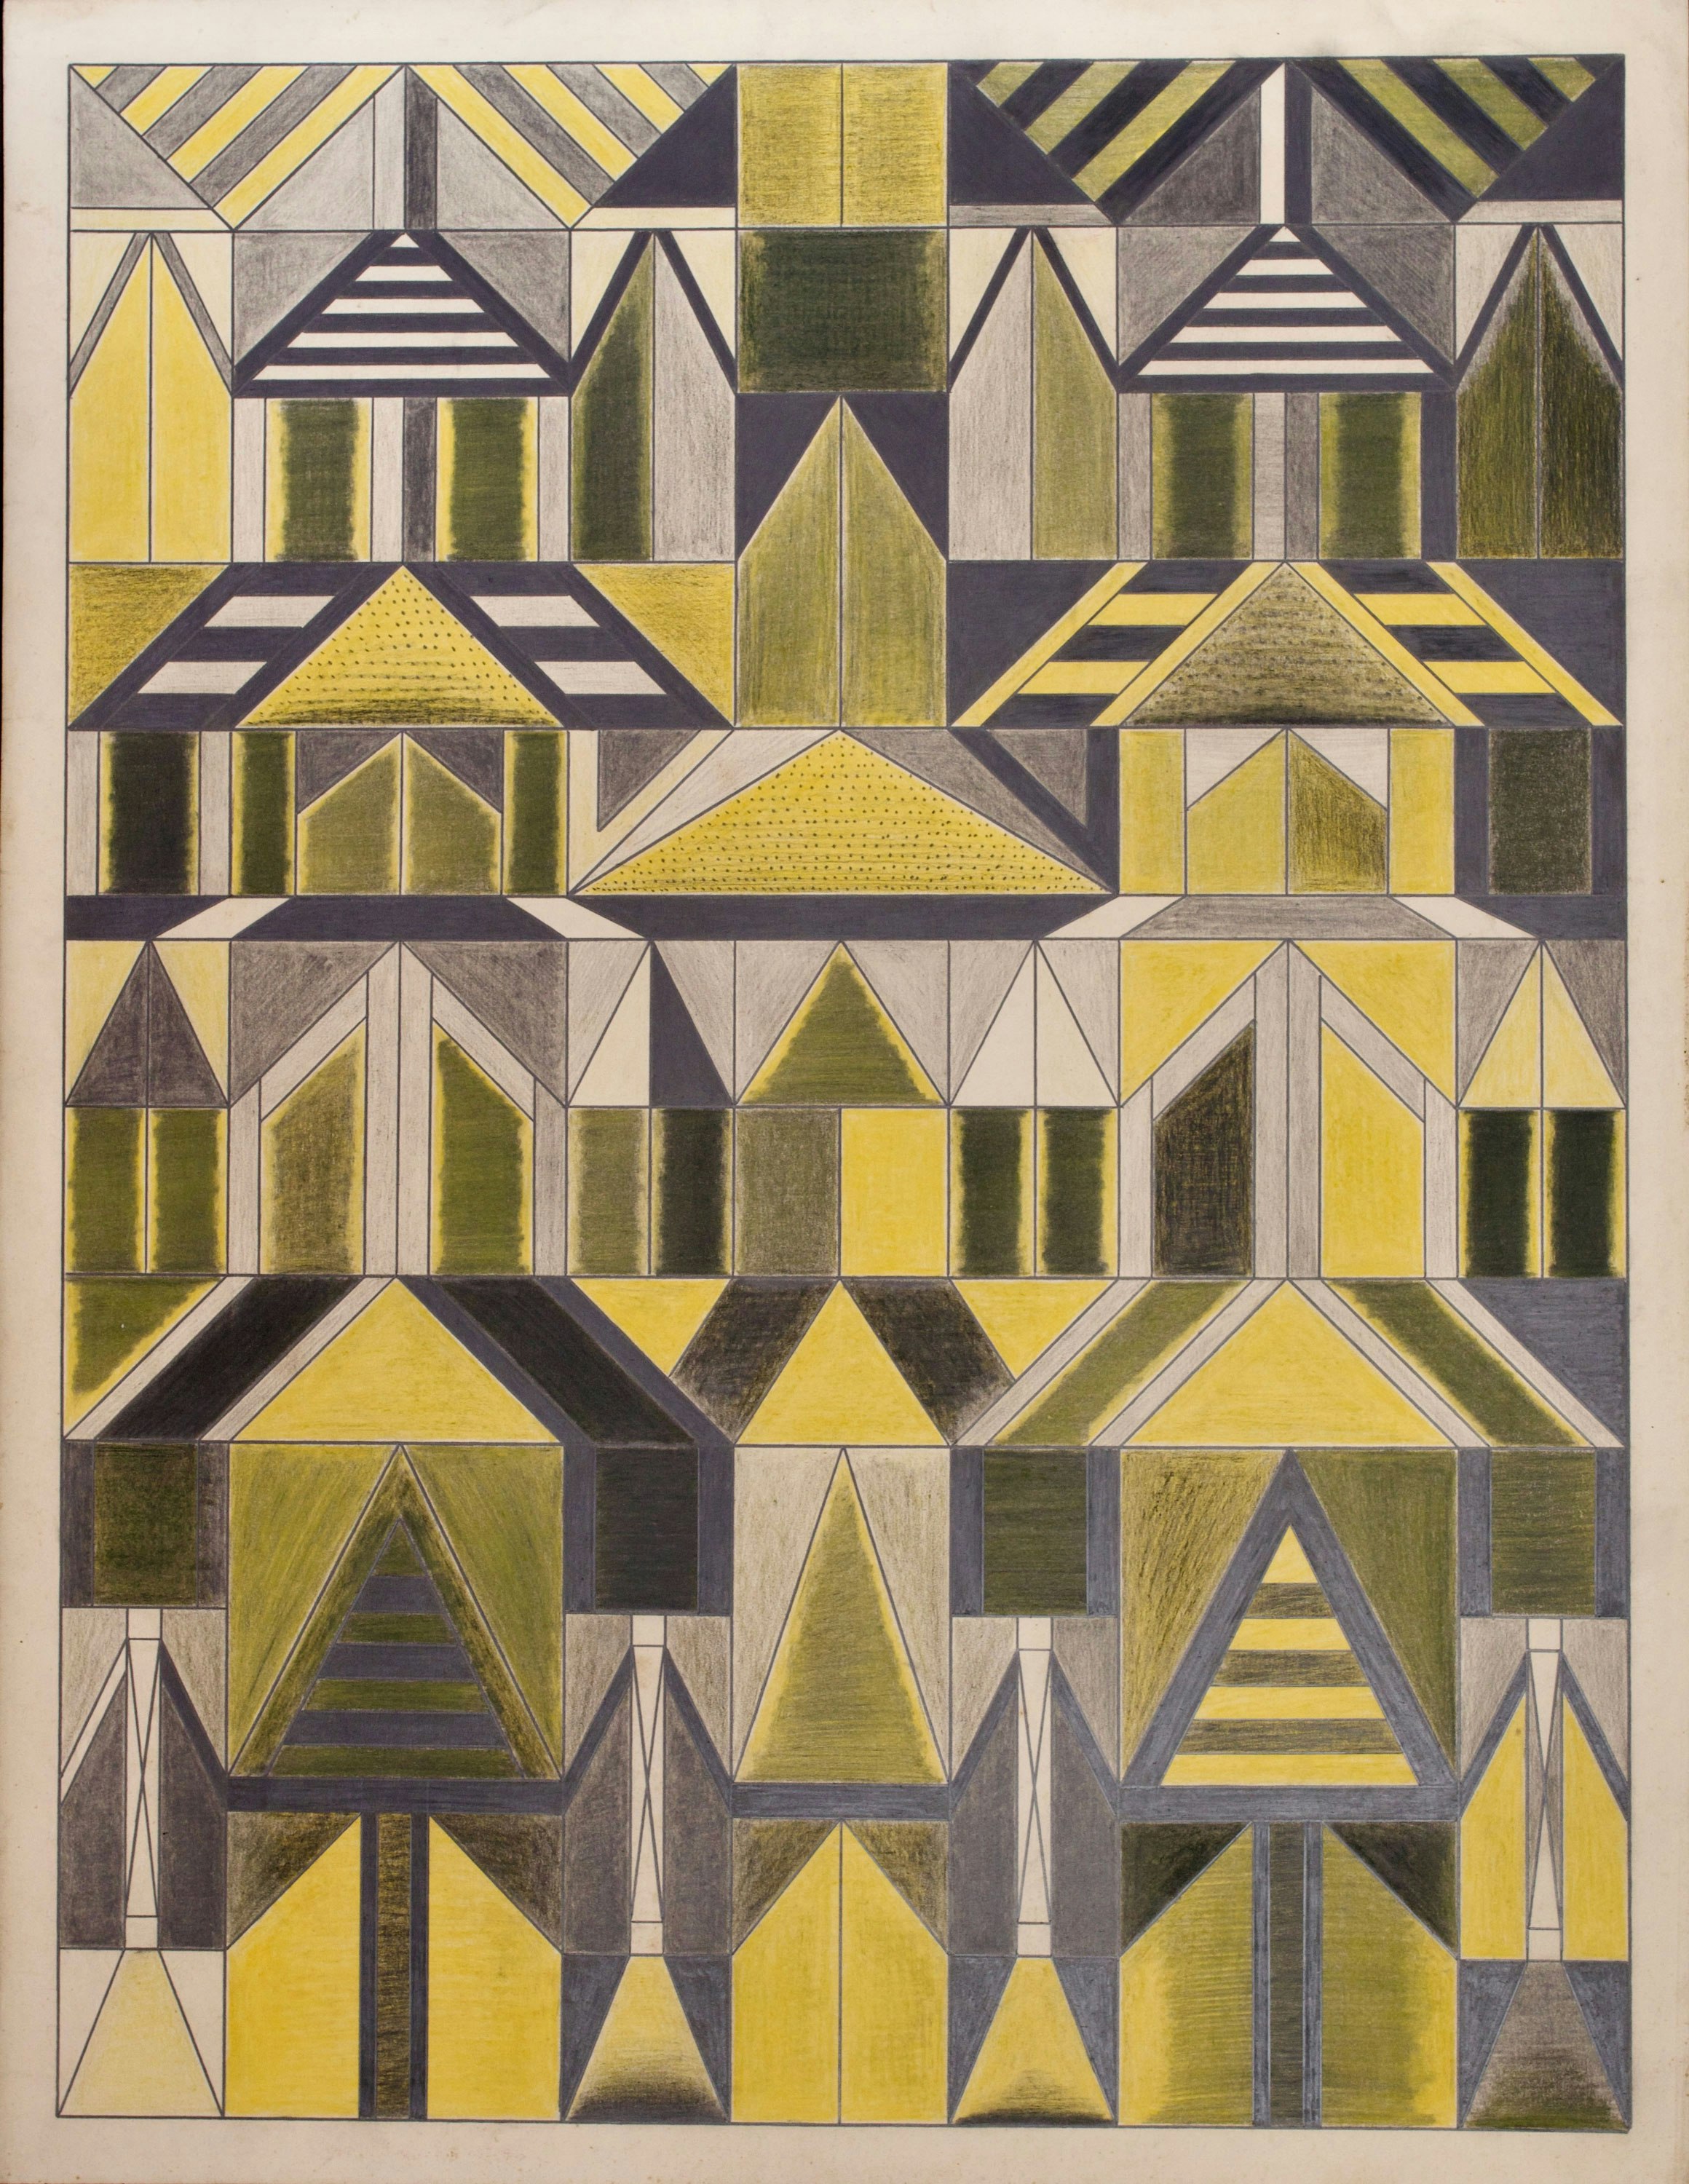 Domingo Guccione, <em>Untitled</em>, ca. 1930-55. Colored pencil and graphite on paper 25 1/2 x 19 5/8 inches. Courtesy Ricco/Maresca Gallery.